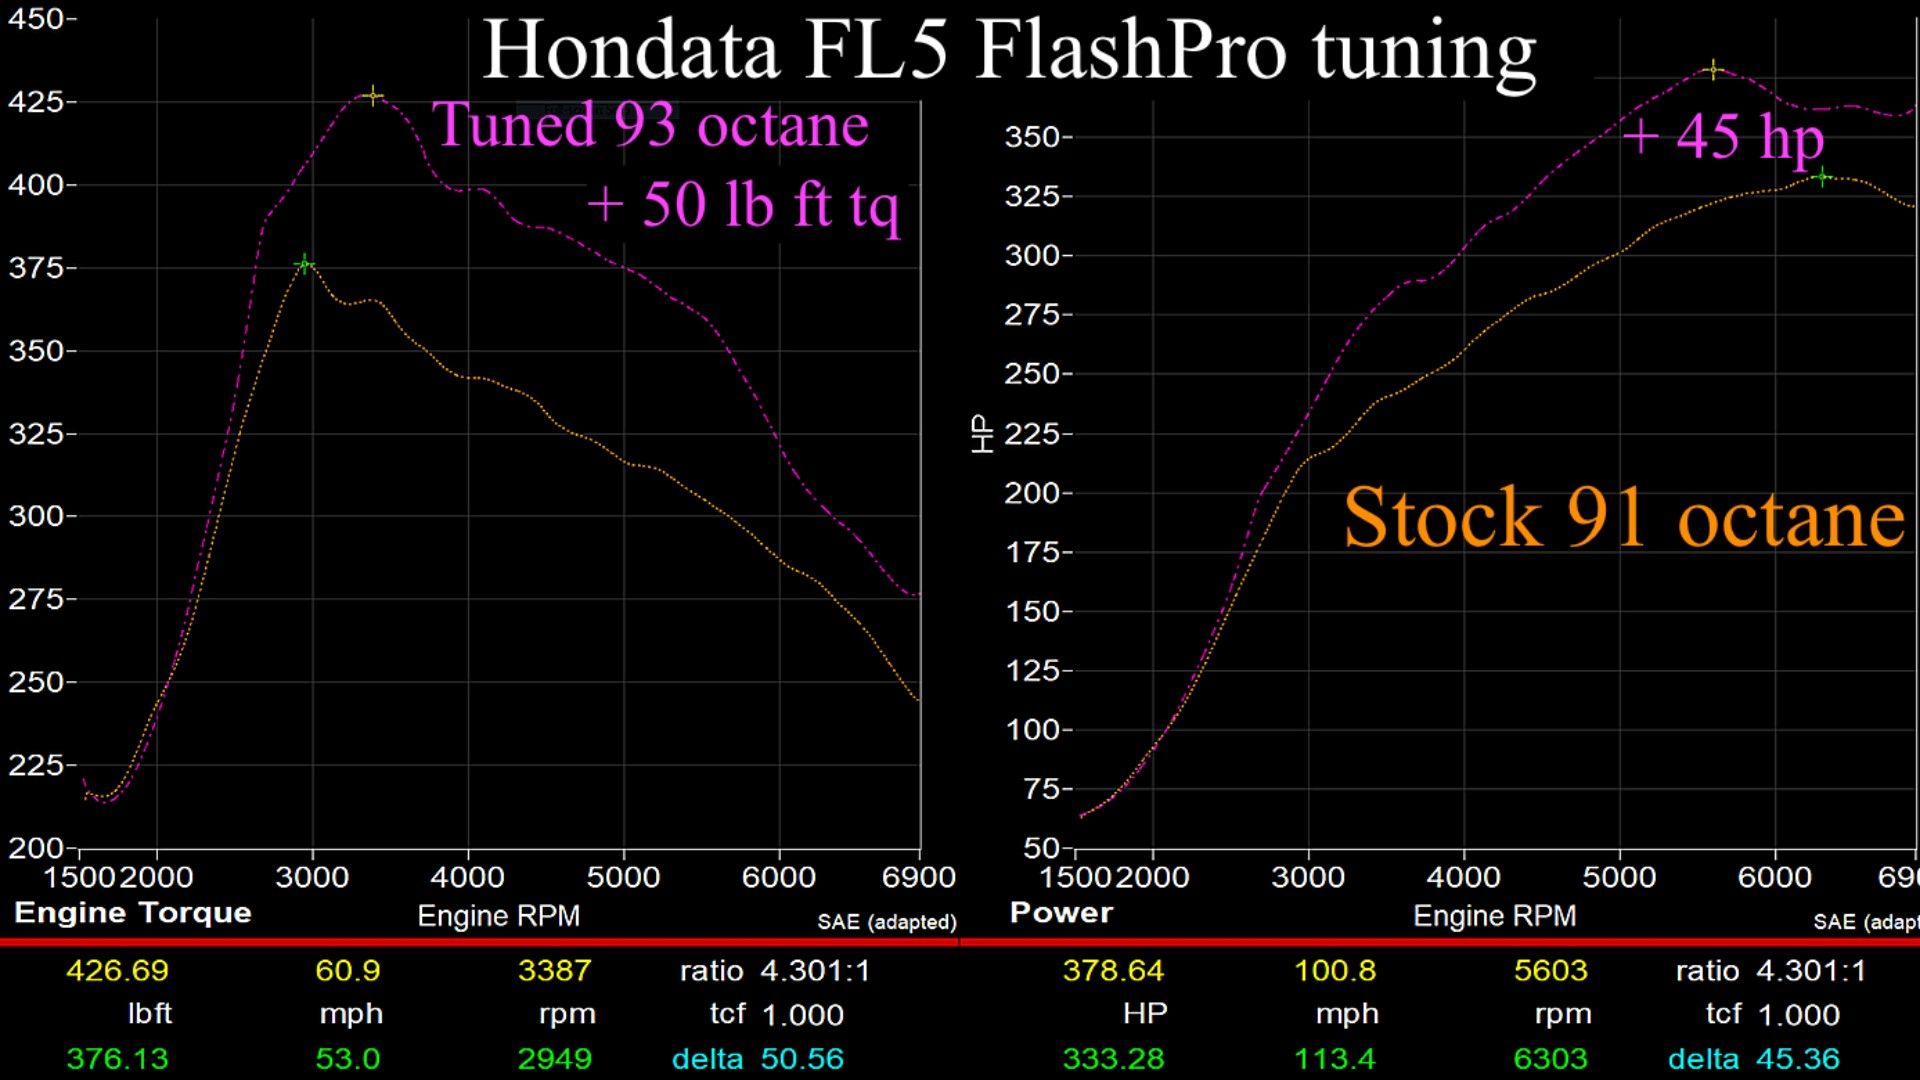 Hondata FlashPro upgrade example (FL5 Civic Type R)